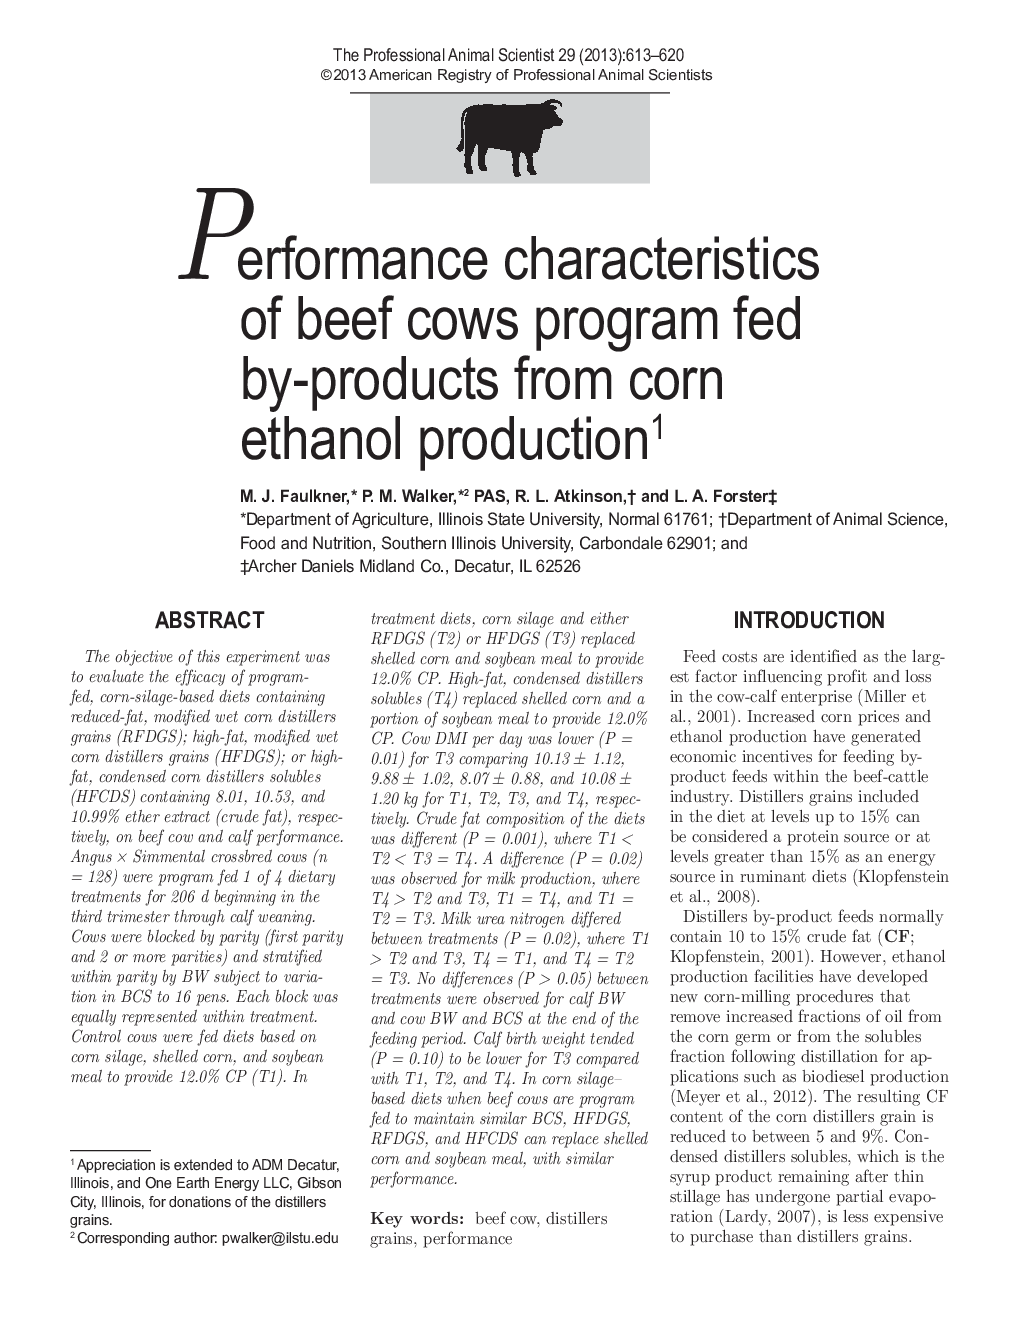 ویژگی های عملکرد گاو گوشت گاو برنامه تغذیه توسط محصولات از تولید ذرت استنول 1 